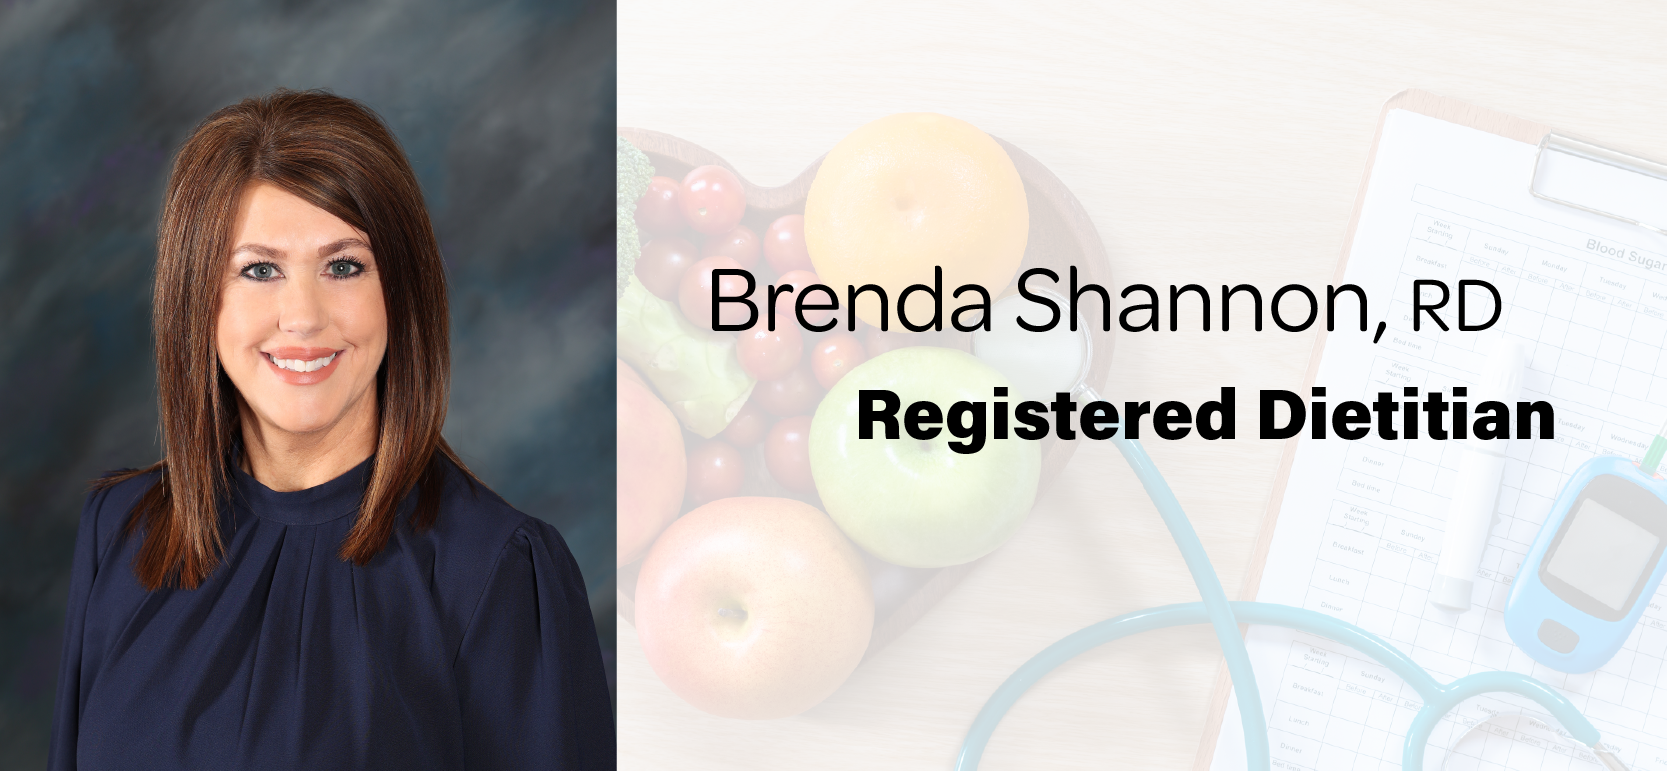 Registered Dietitian - Brenda Shannon, RD